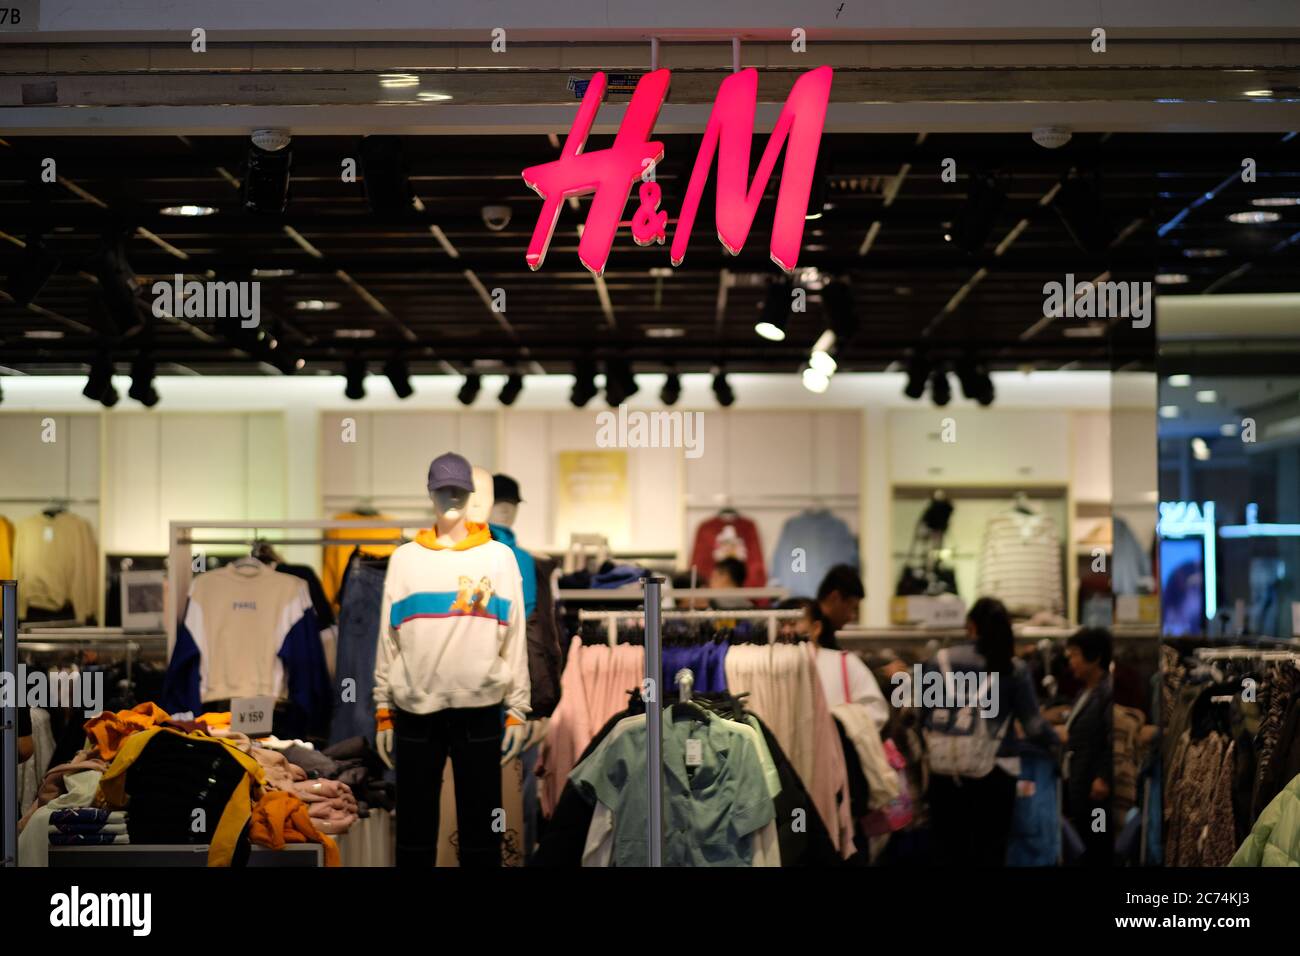 Fachada de la de ropa H&M. Logotipo rojo brillante colgado en la entrada. Desenfoca la tienda de ropa y clientes como Una Marca de moda sueca Fotografía de stock -